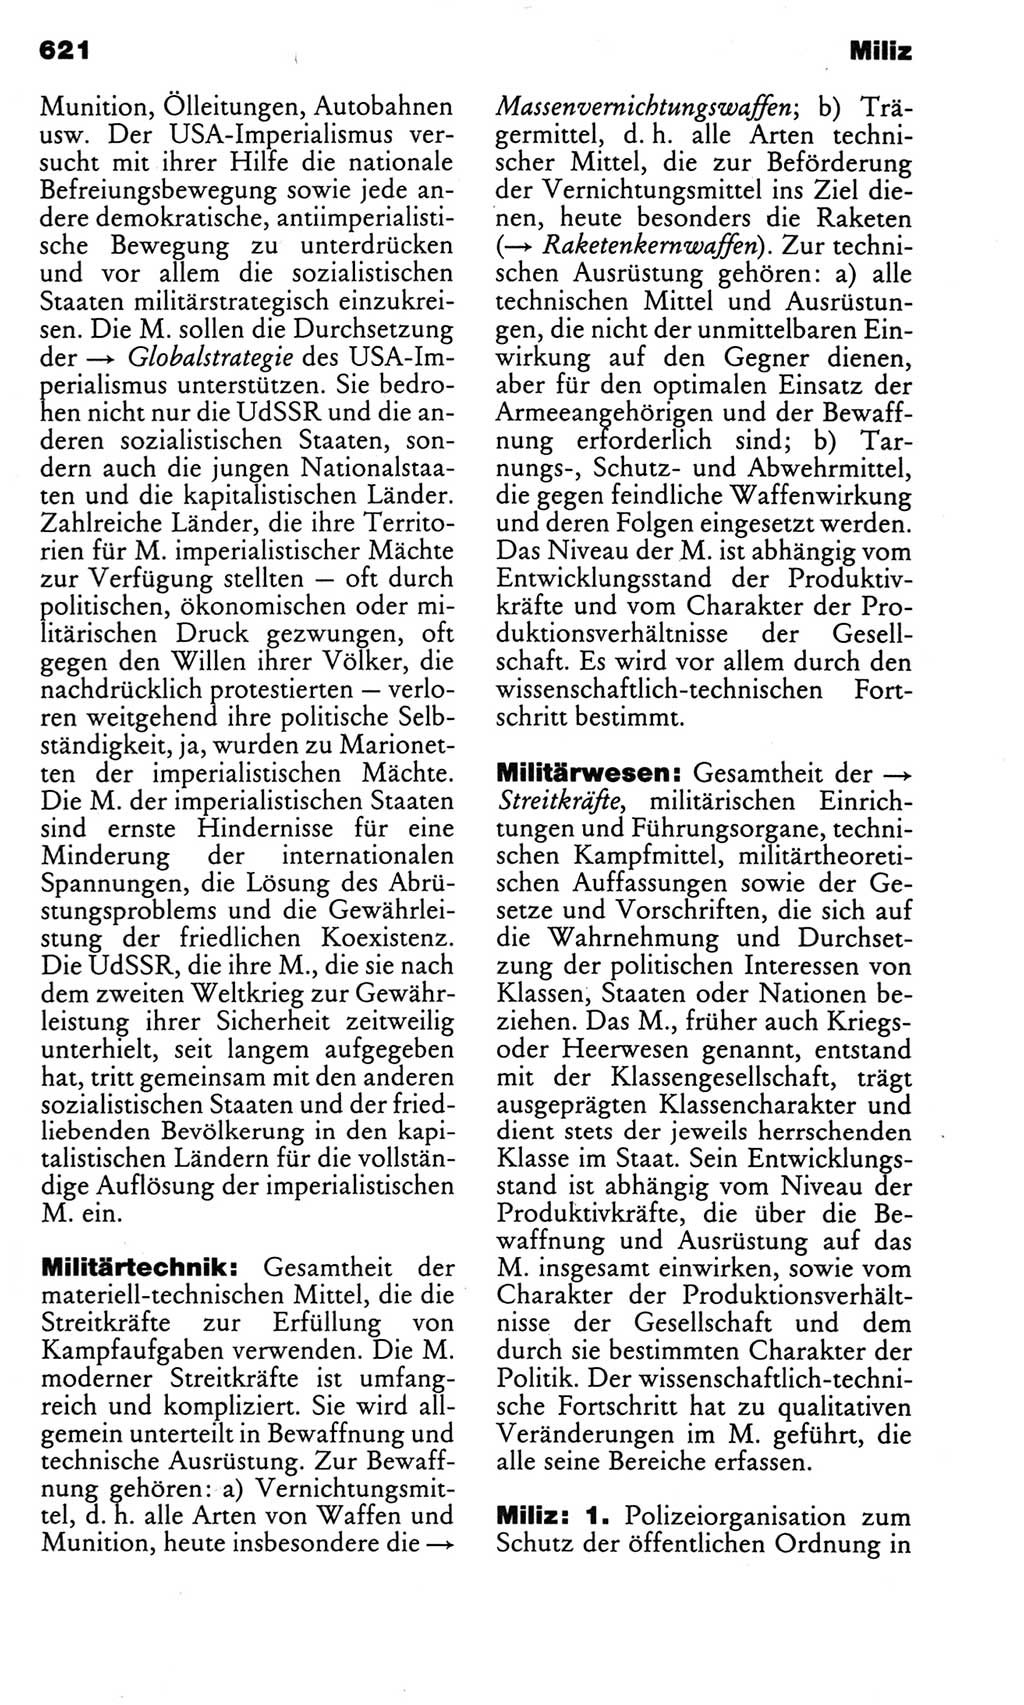 Kleines politisches Wörterbuch [Deutsche Demokratische Republik (DDR)] 1983, Seite 621 (Kl. pol. Wb. DDR 1983, S. 621)